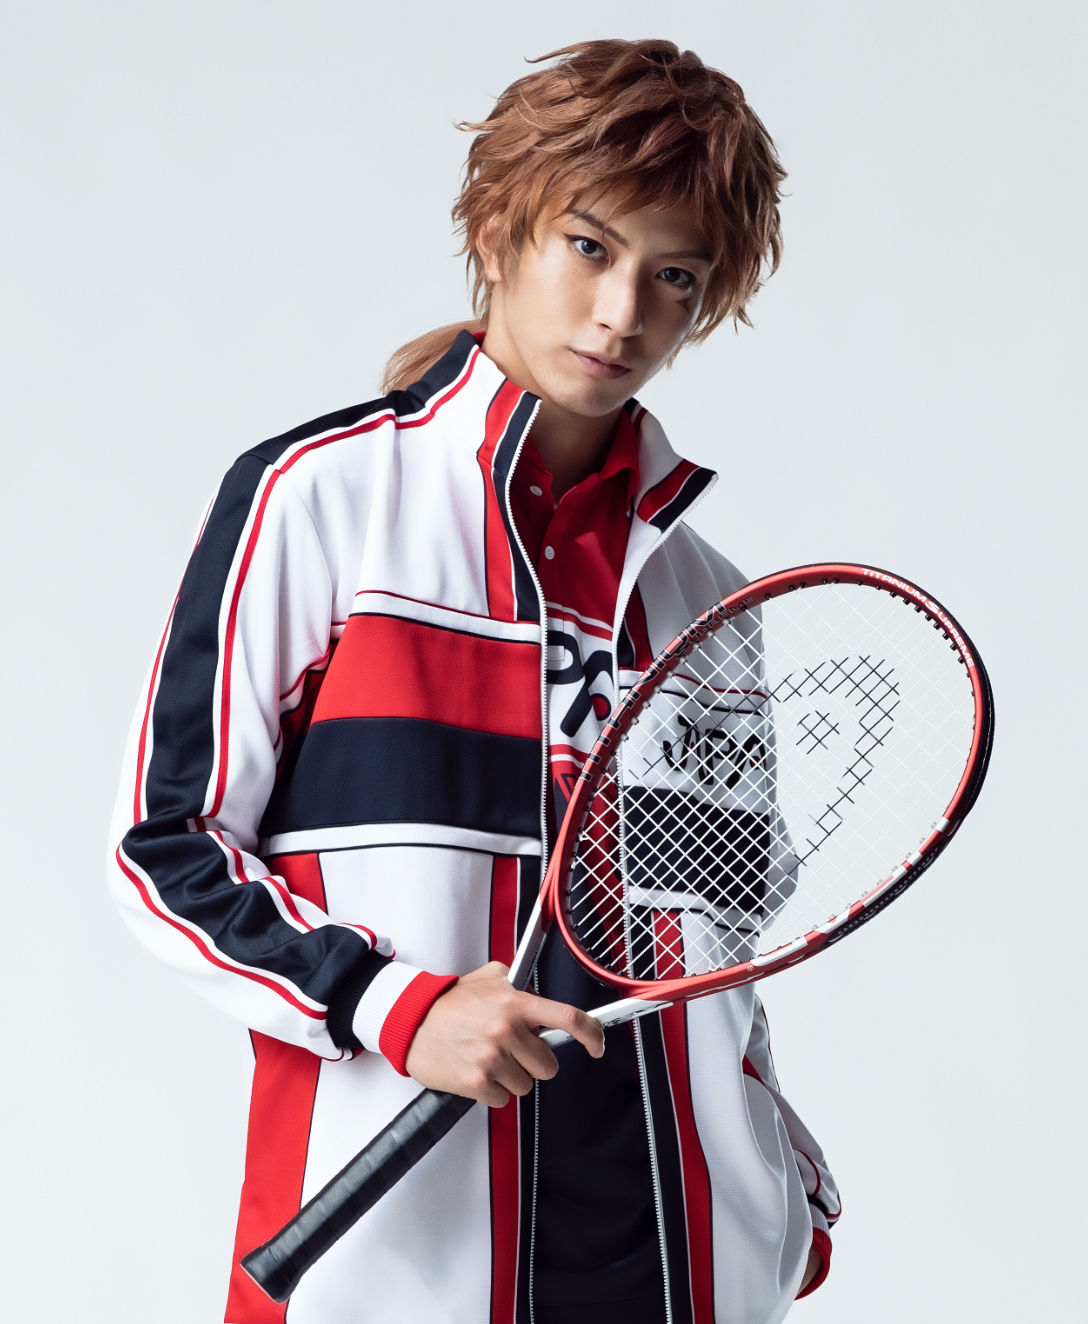 大和祐大 キャスト紹介 ミュージカル テニスの王子様 新テニスの王子様 公式サイト